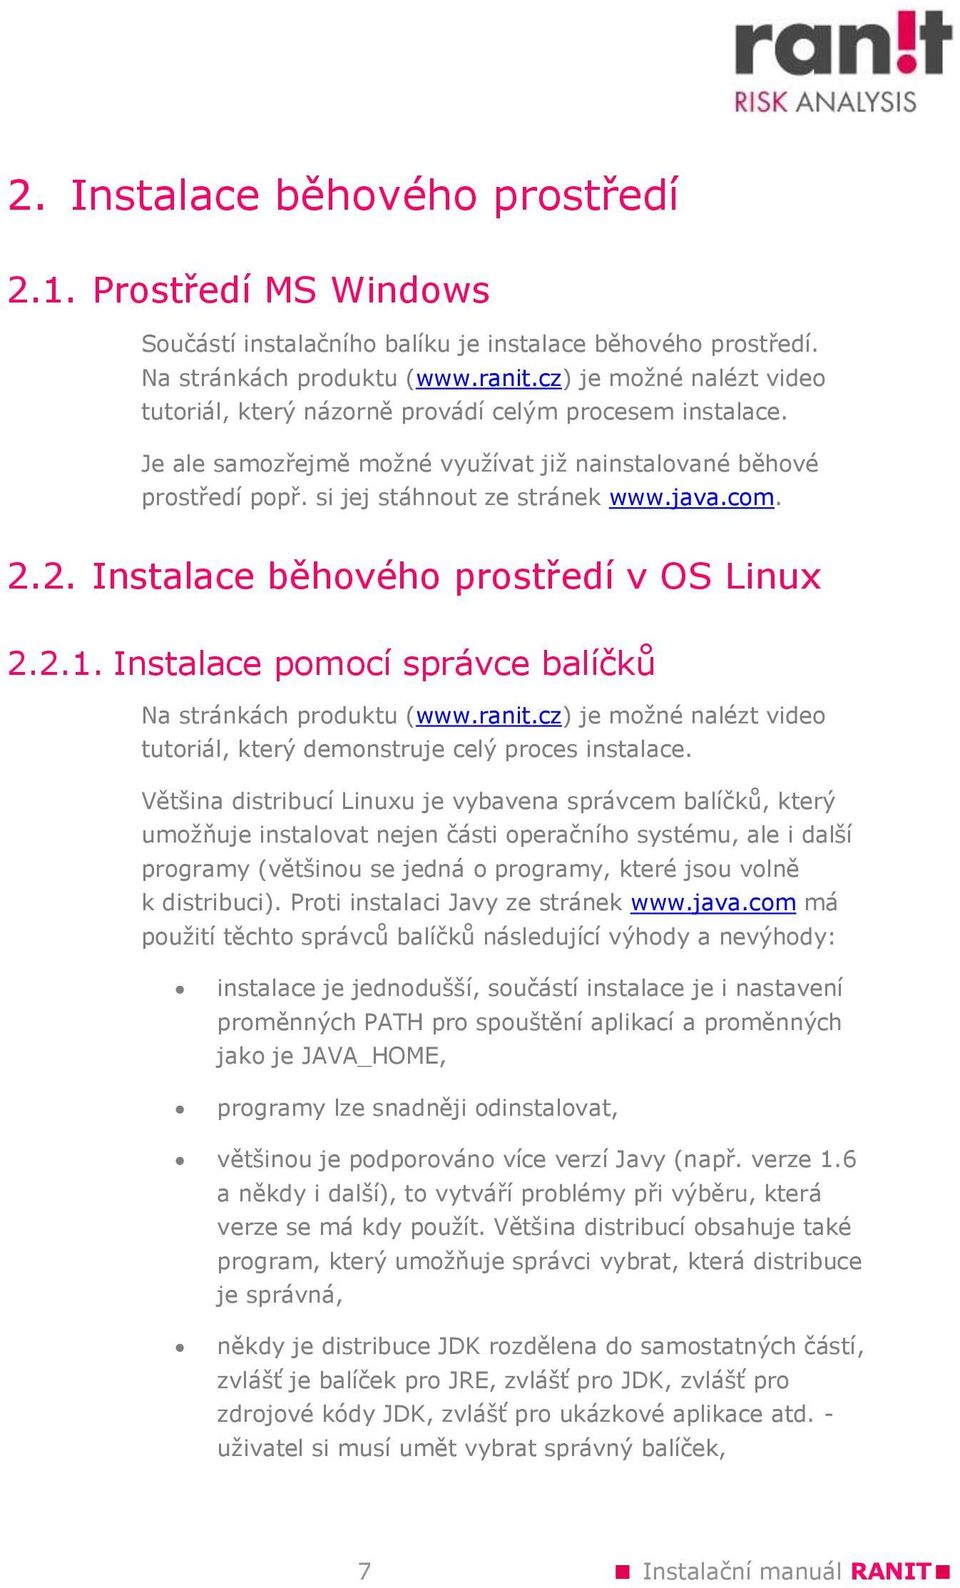 2.2. Instalace běhového prostředí v OS Linux 2.2.1. Instalace pomocí správce balíčků Na stránkách produktu (www.ranit.cz) je možné nalézt video tutoriál, který demonstruje celý proces instalace.